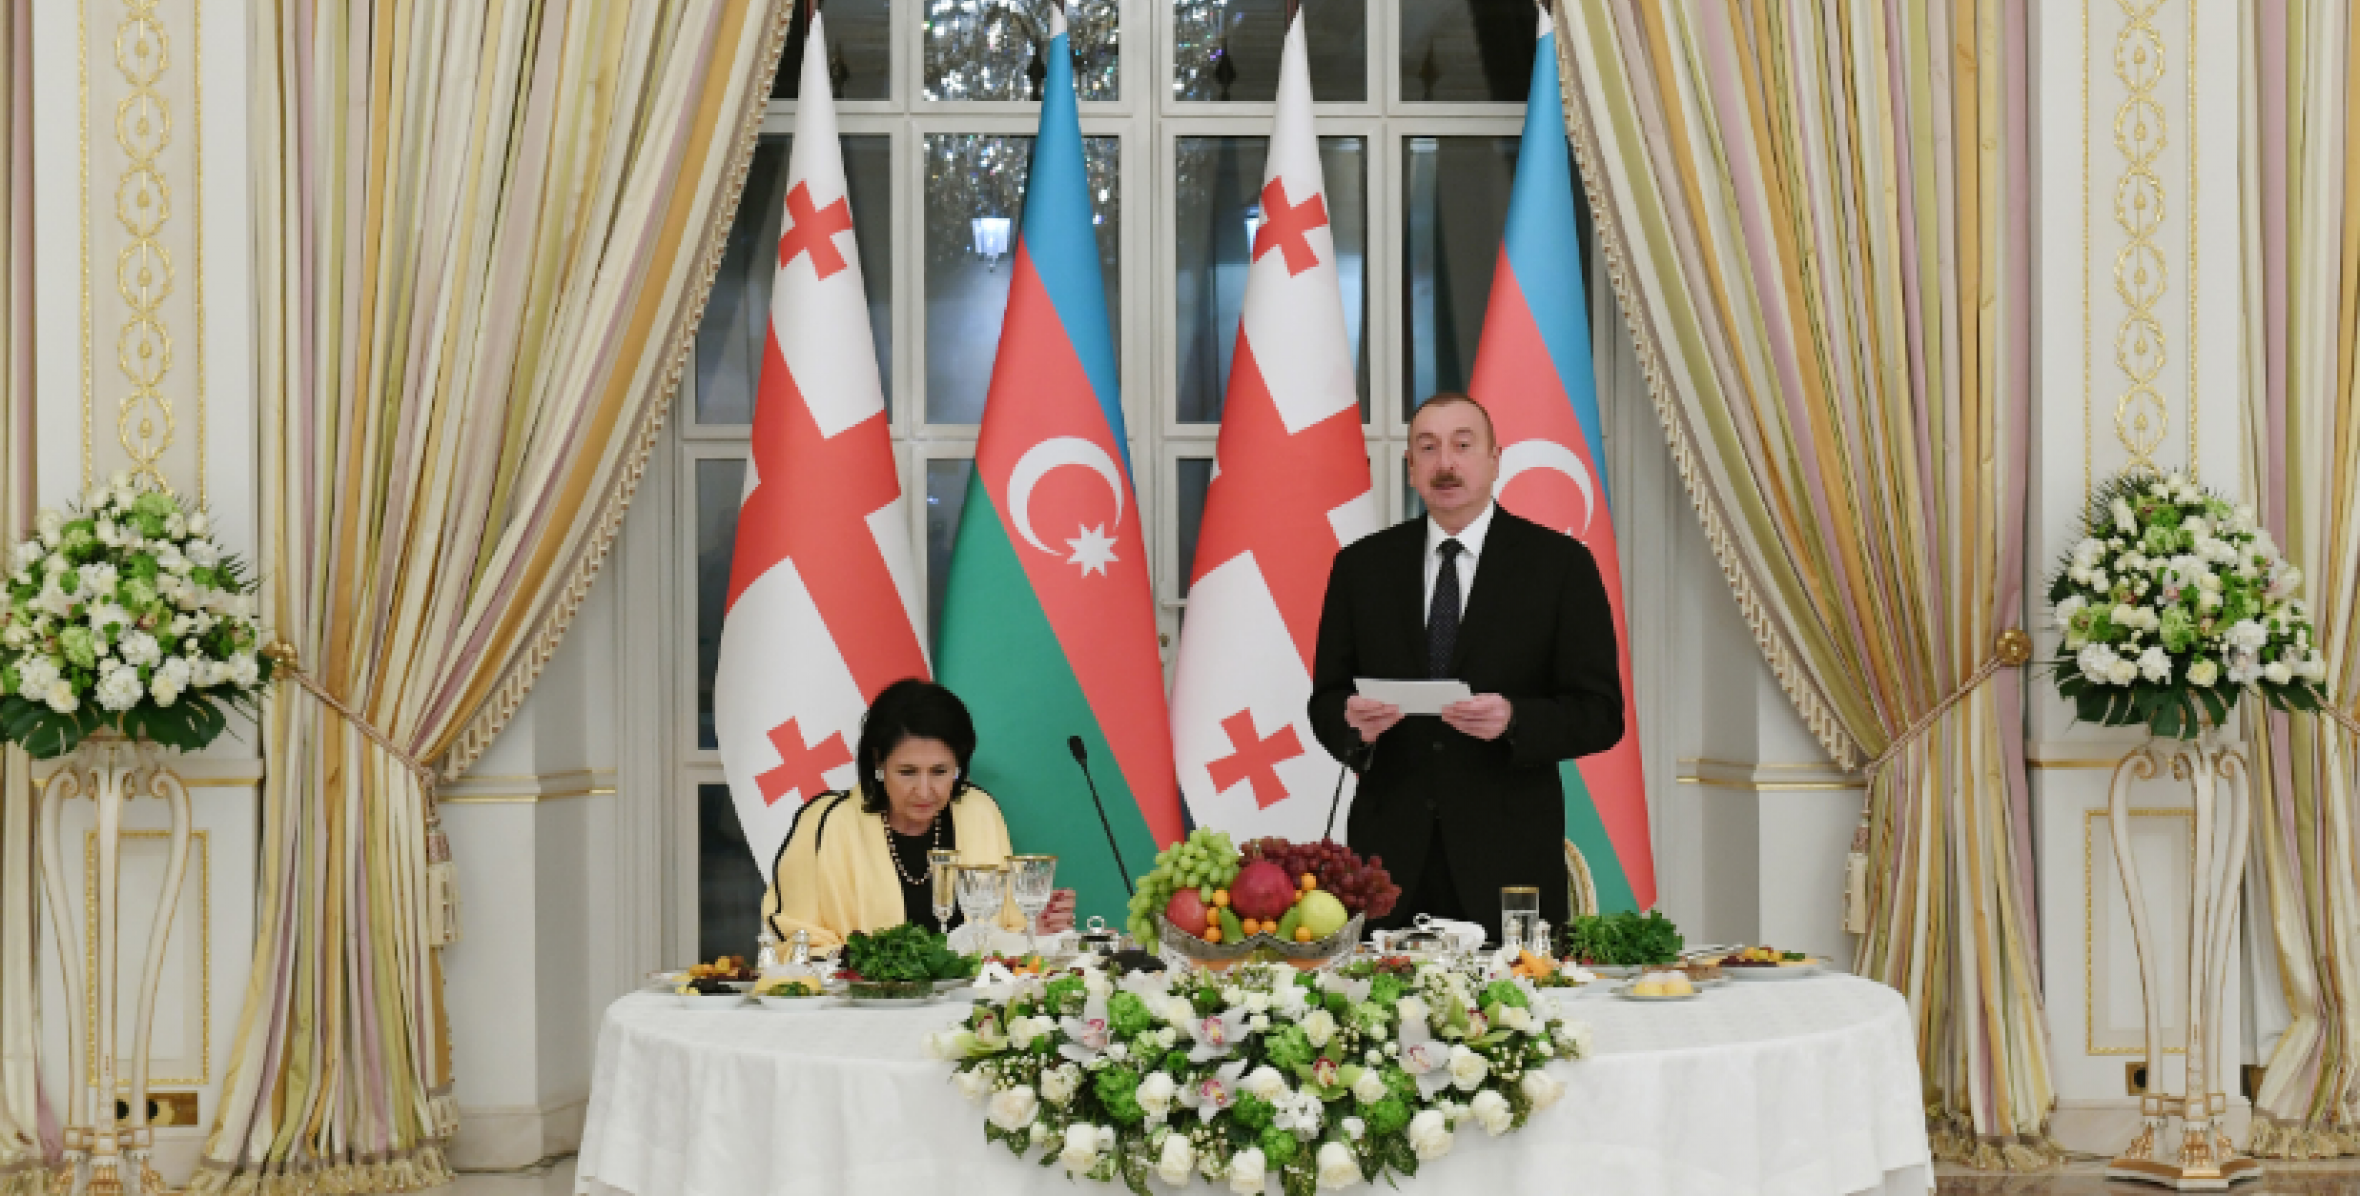 Oт имени Ильхама Алиева был дан официальный прием в честь Президента Грузии Саломе Зурабишвили